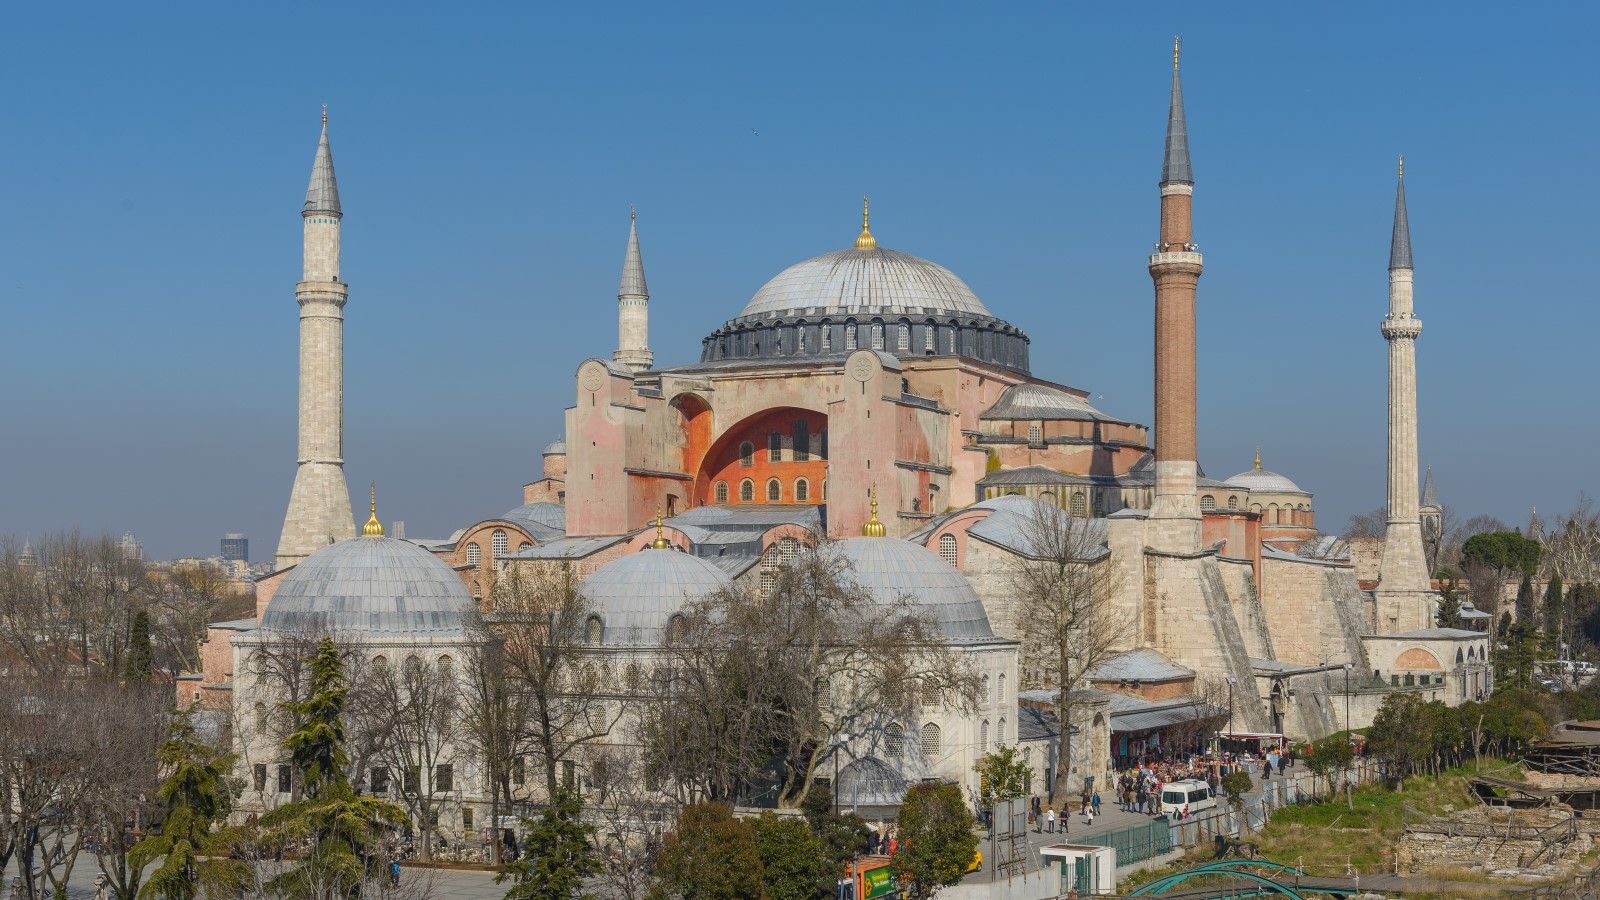 オスマン帝国がキリスト教徒と共生できた理由 イスラム世界における共存と平等を読み解く | アジア諸国 | 東洋経済オンライン